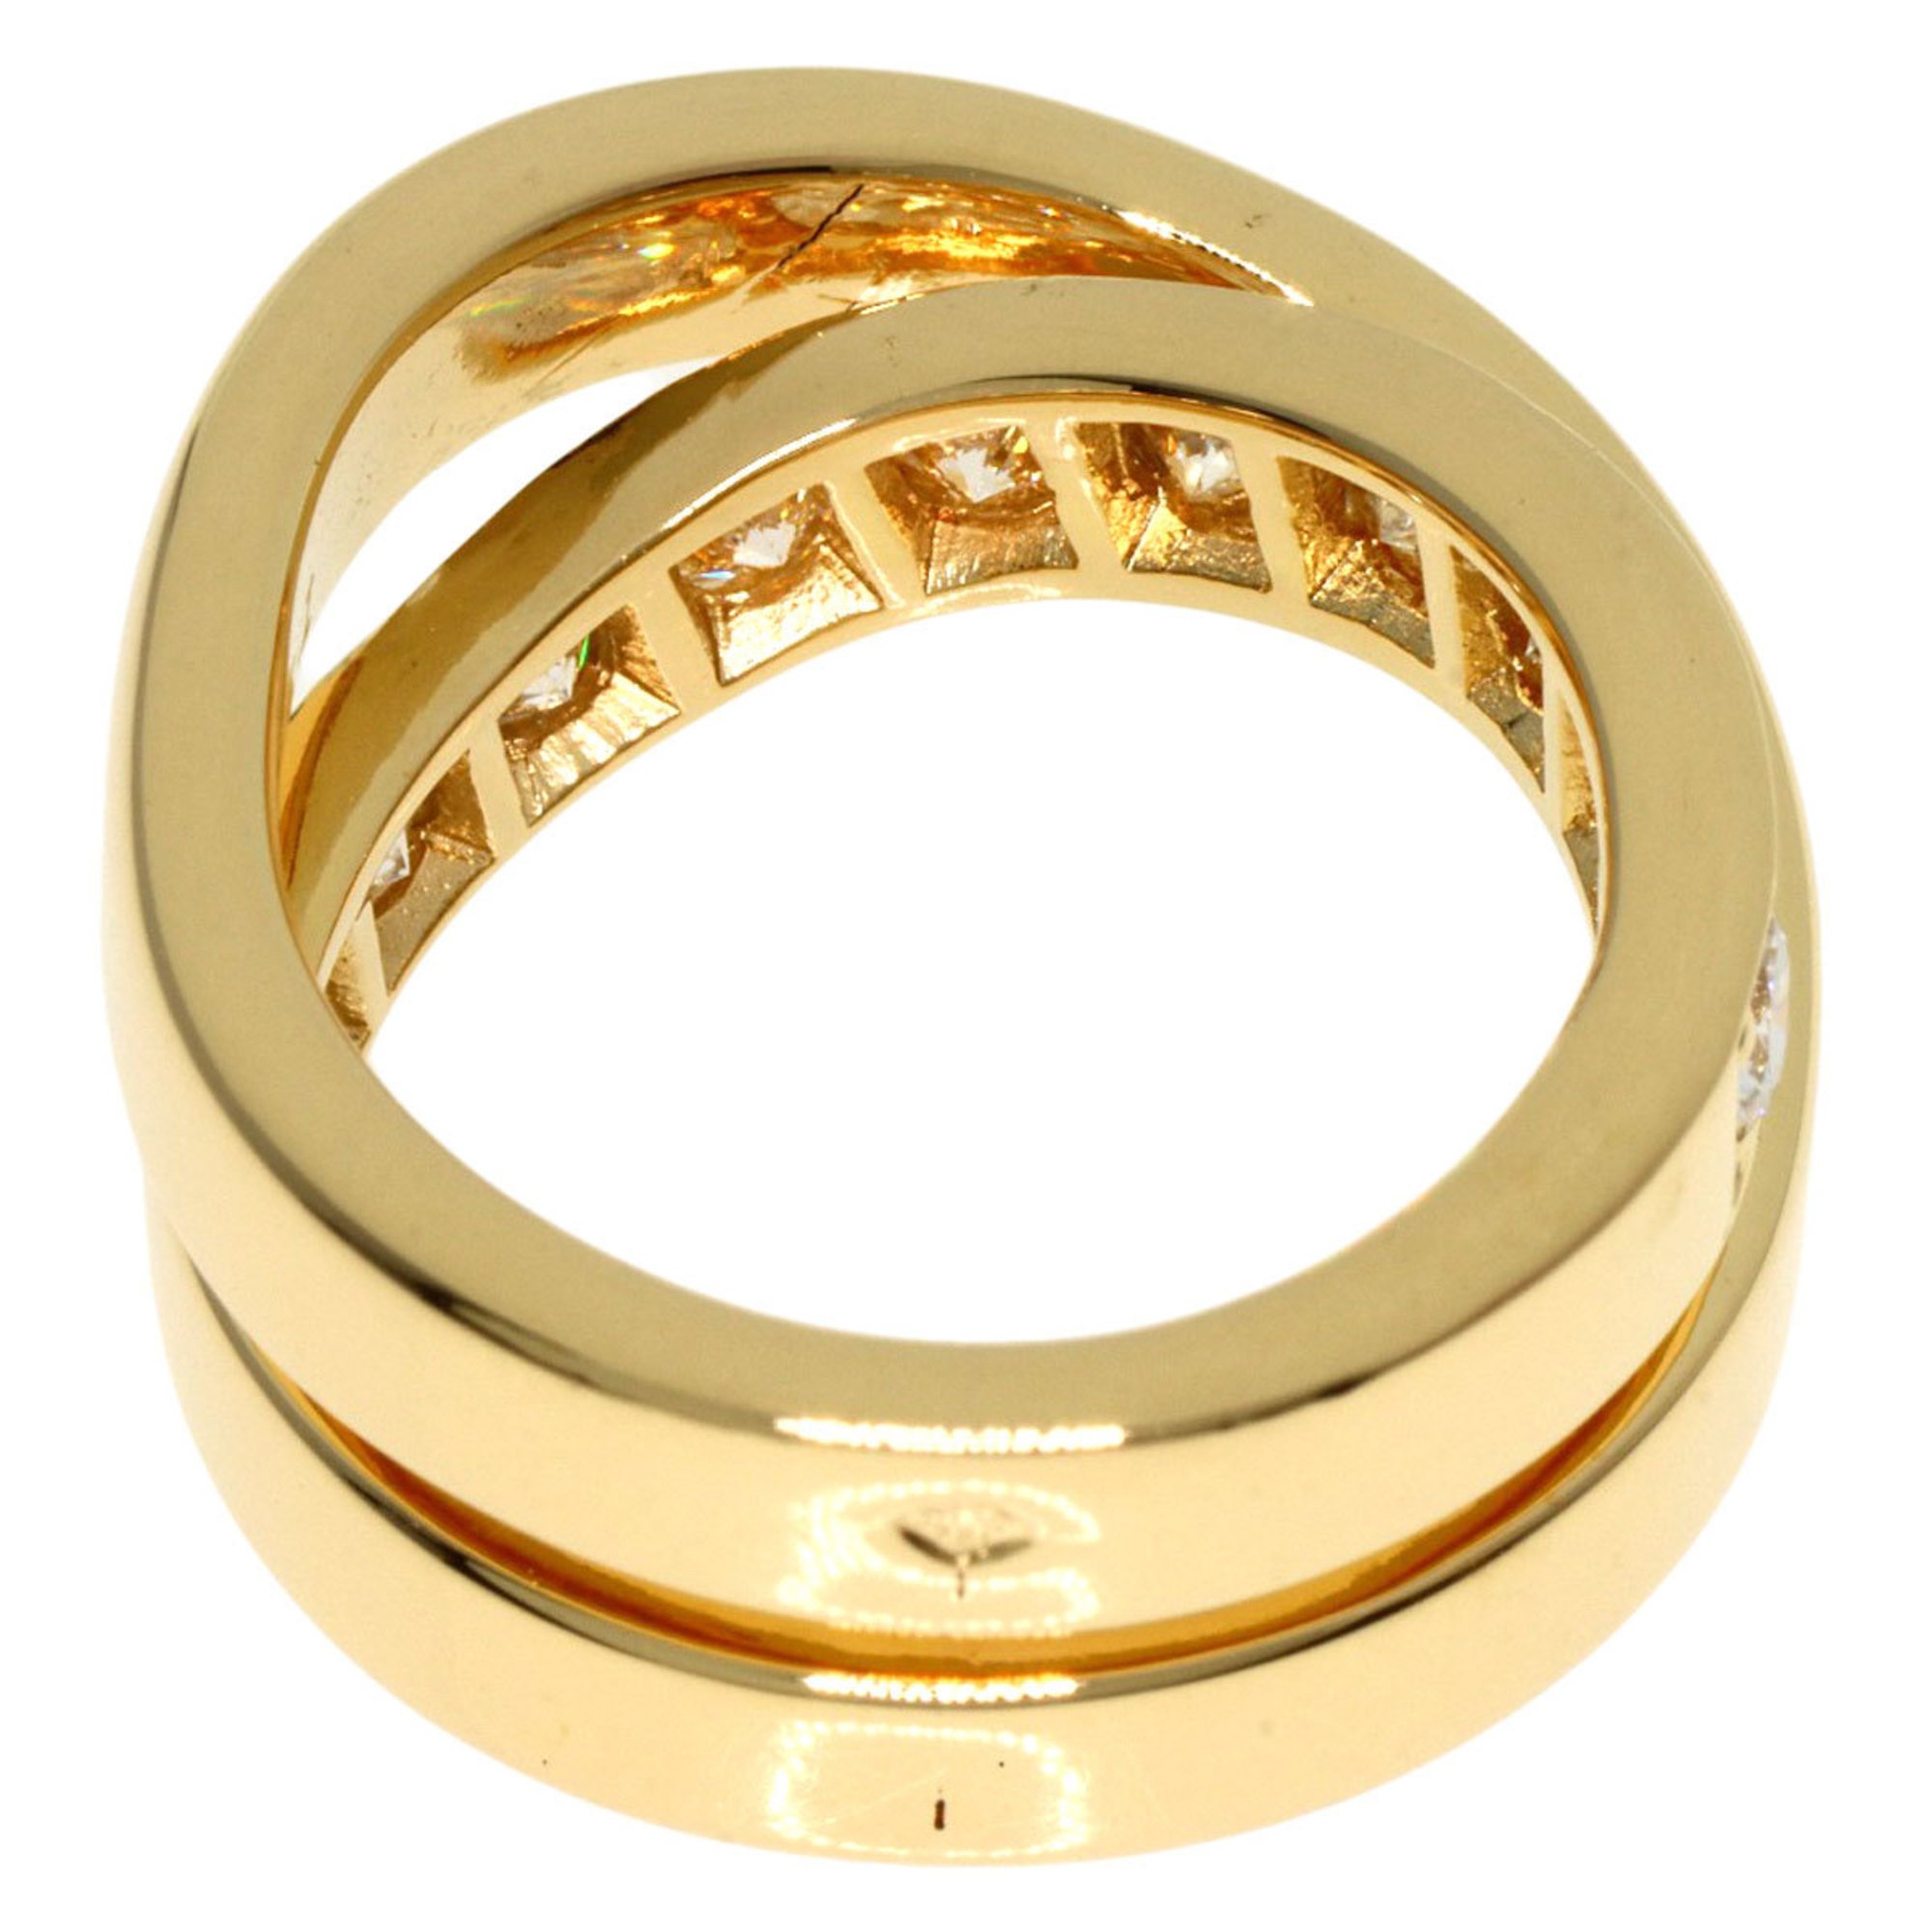 Cartier Paris Ring Diamond #46 K18 Yellow Gold Women's CARTIER